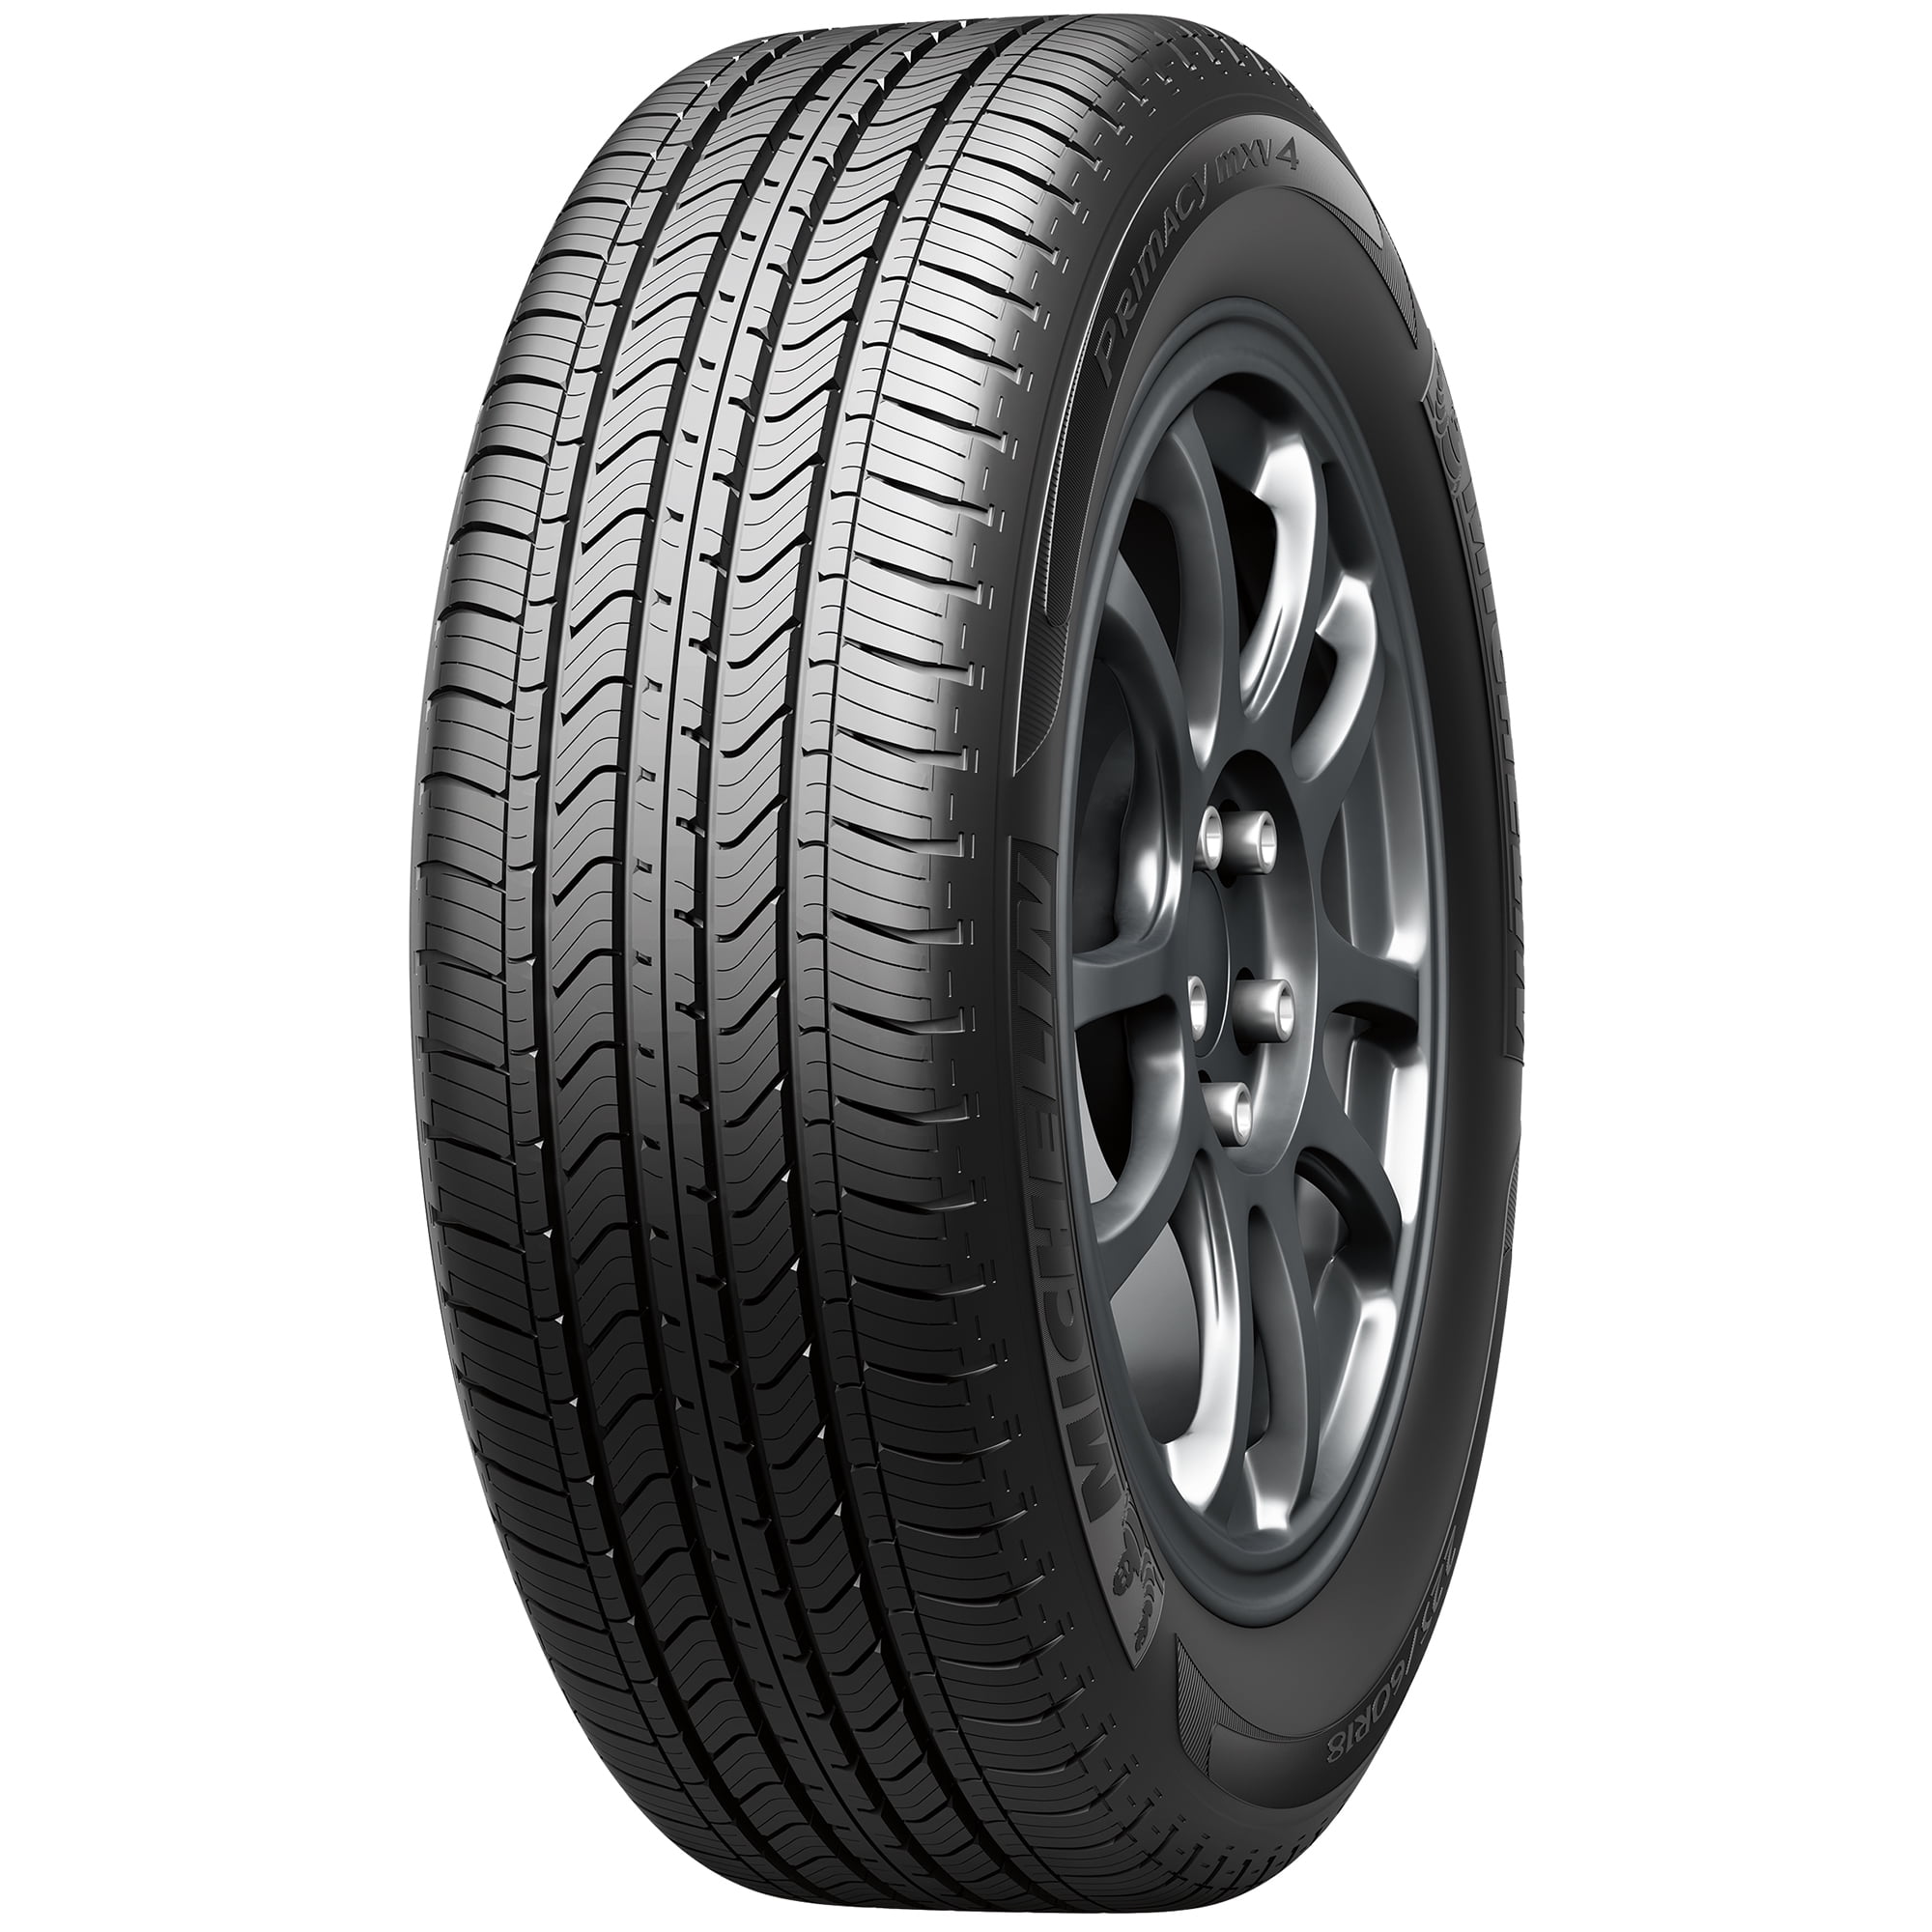 P235/60R18 102V Michelin Primacy MXM4 Touring Radial Tire